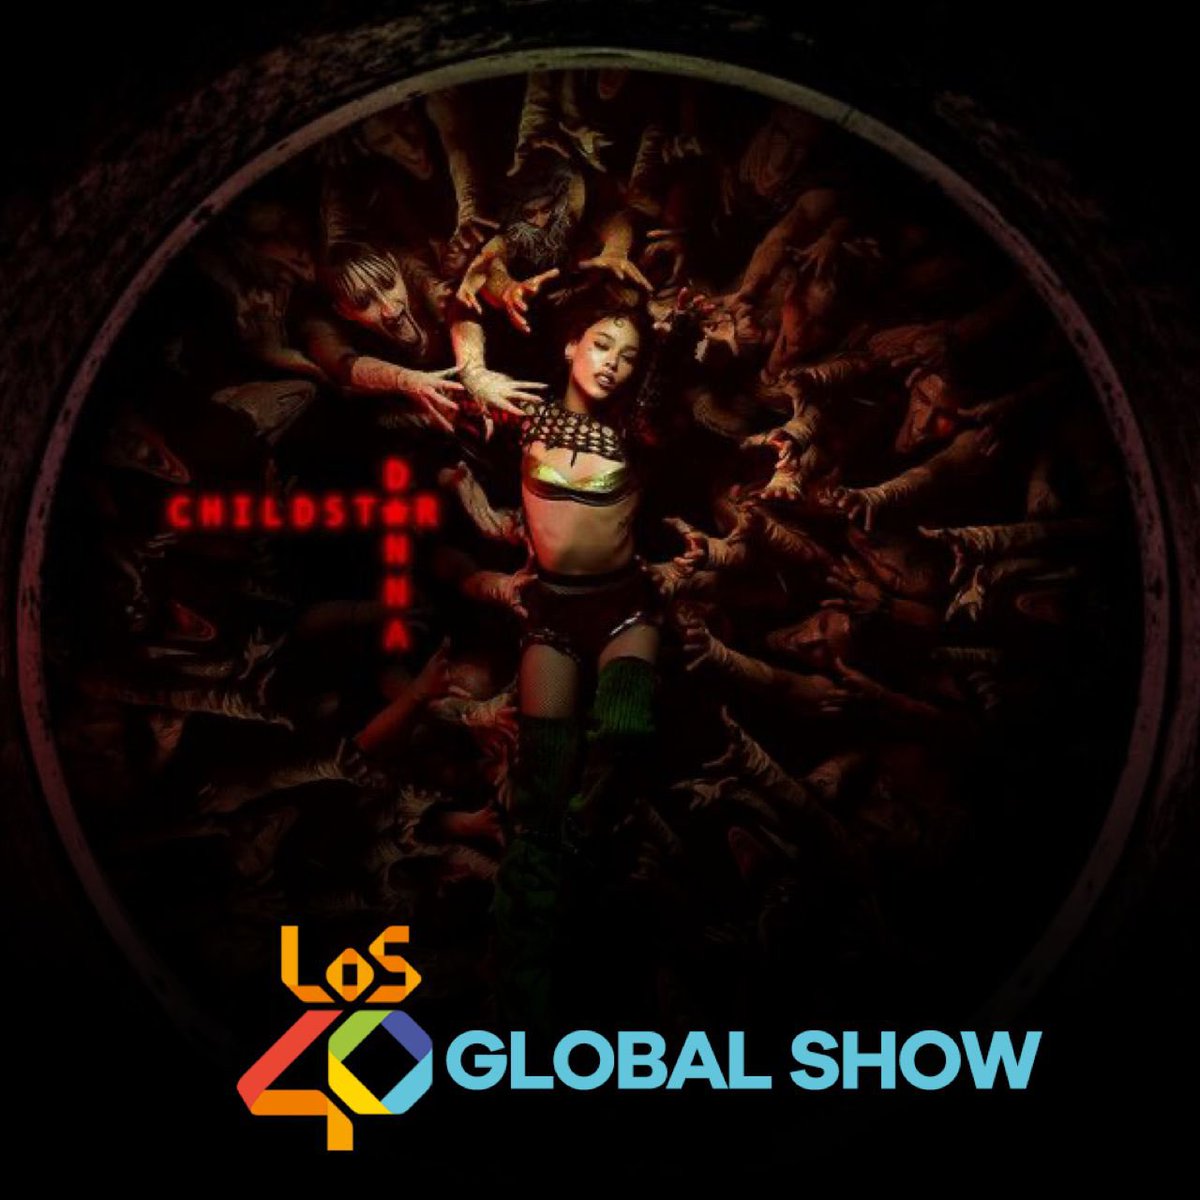 Este domingo en #40GlobalShoe449 para España y Latinoamérica hablaremos con @dannajustdanna en conexión con @los40colombia y escucharemos su nuevo tema ATARI 🎶✨ @40GlobalShow